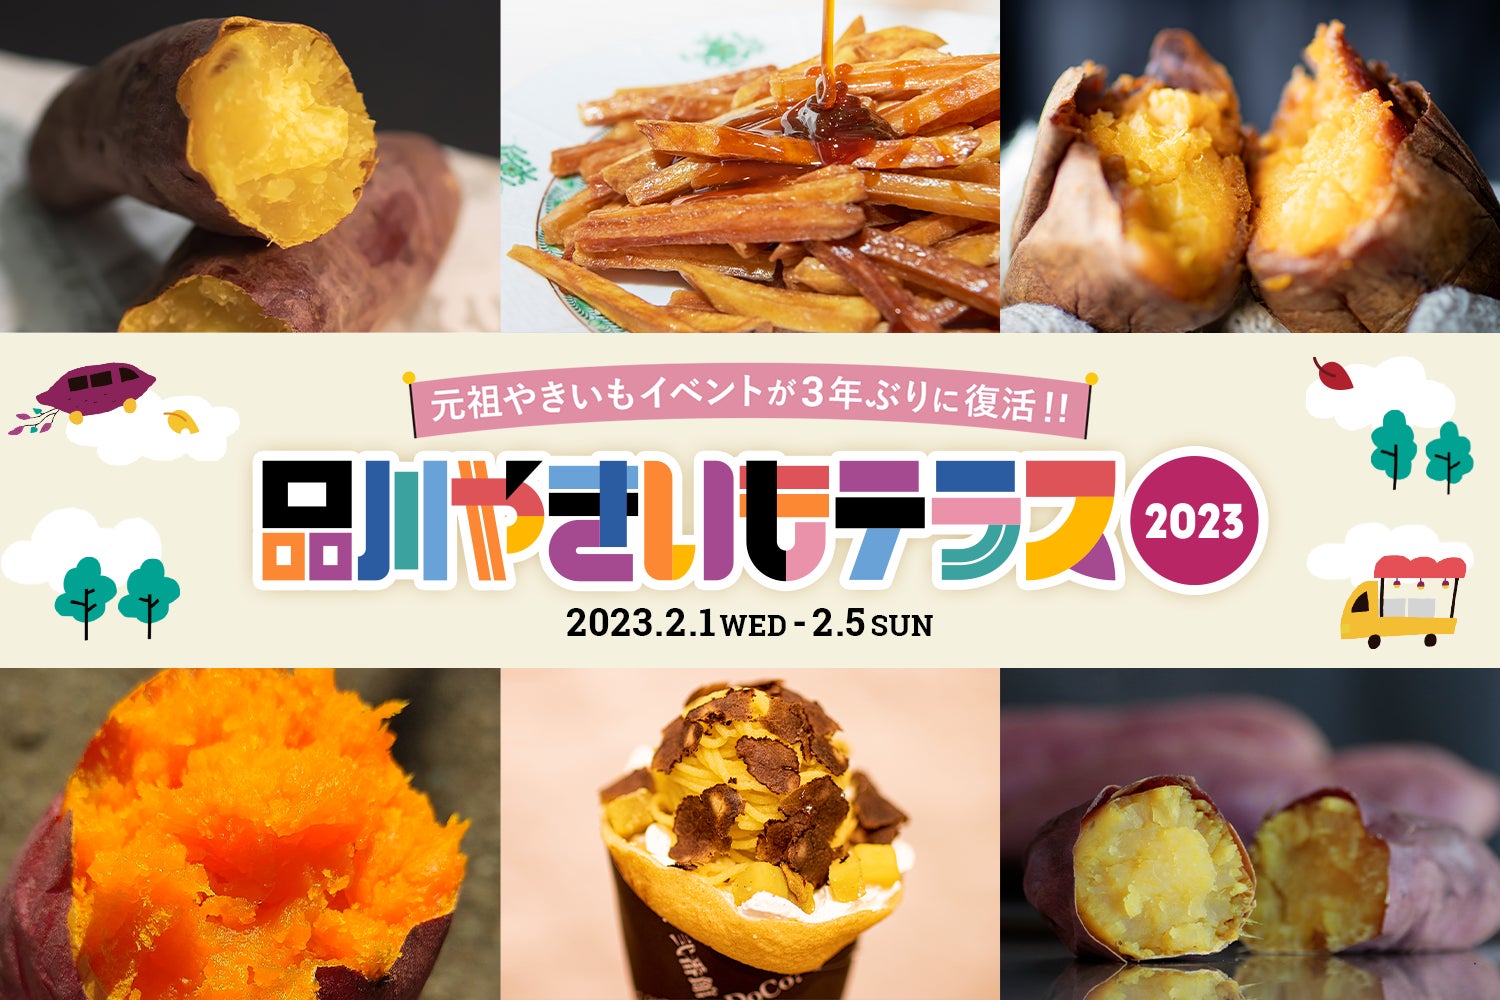 新宿で大人気のオイスターバーが星川駅に登場‼ここでしか食べることができない新鮮で希少な生牡蠣がいつでも楽しめる「オイスターバー＆シーフードイタリアン」UNION SEAFOOD CAFEがオープン‼